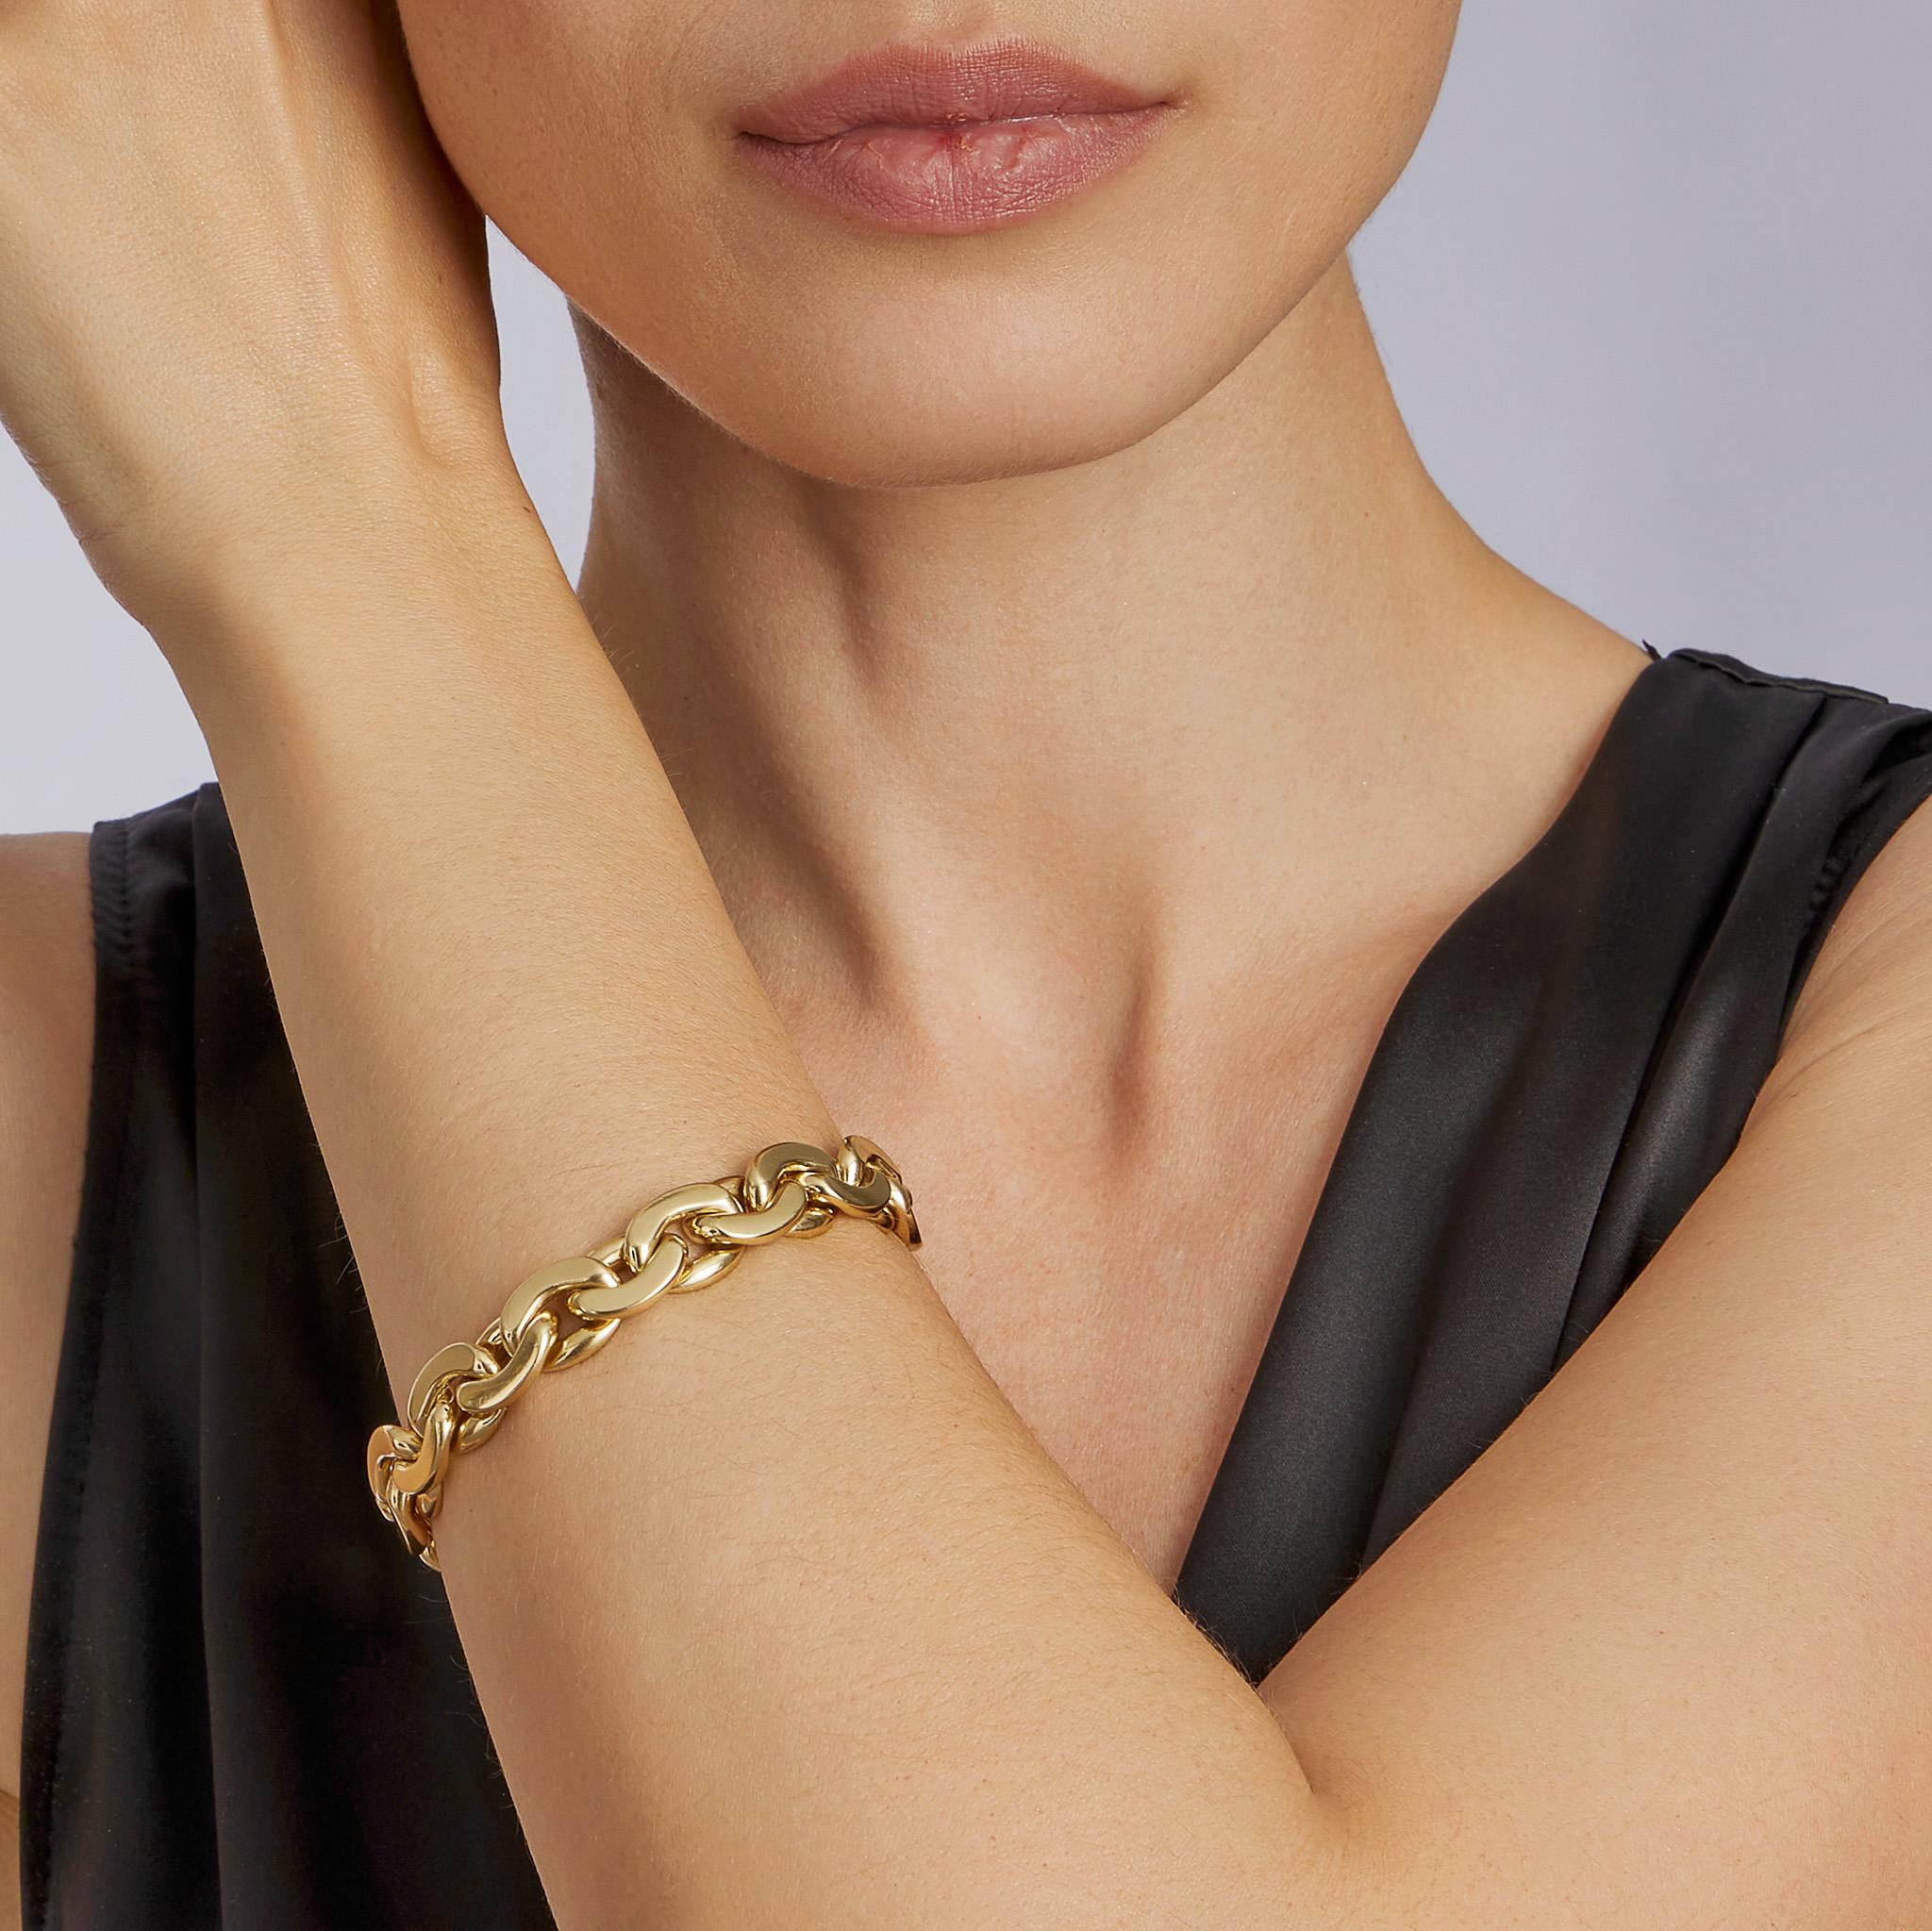 Datant des années 1970, ce bracelet à maillons aplatis de Tiffany & Co. L'Italie est composée d'or 18K poli. Une belle forme, tant dans le modelage que dans les proportions, ce bracelet d'une souplesse maximale et d'un poids satisfaisant se marie